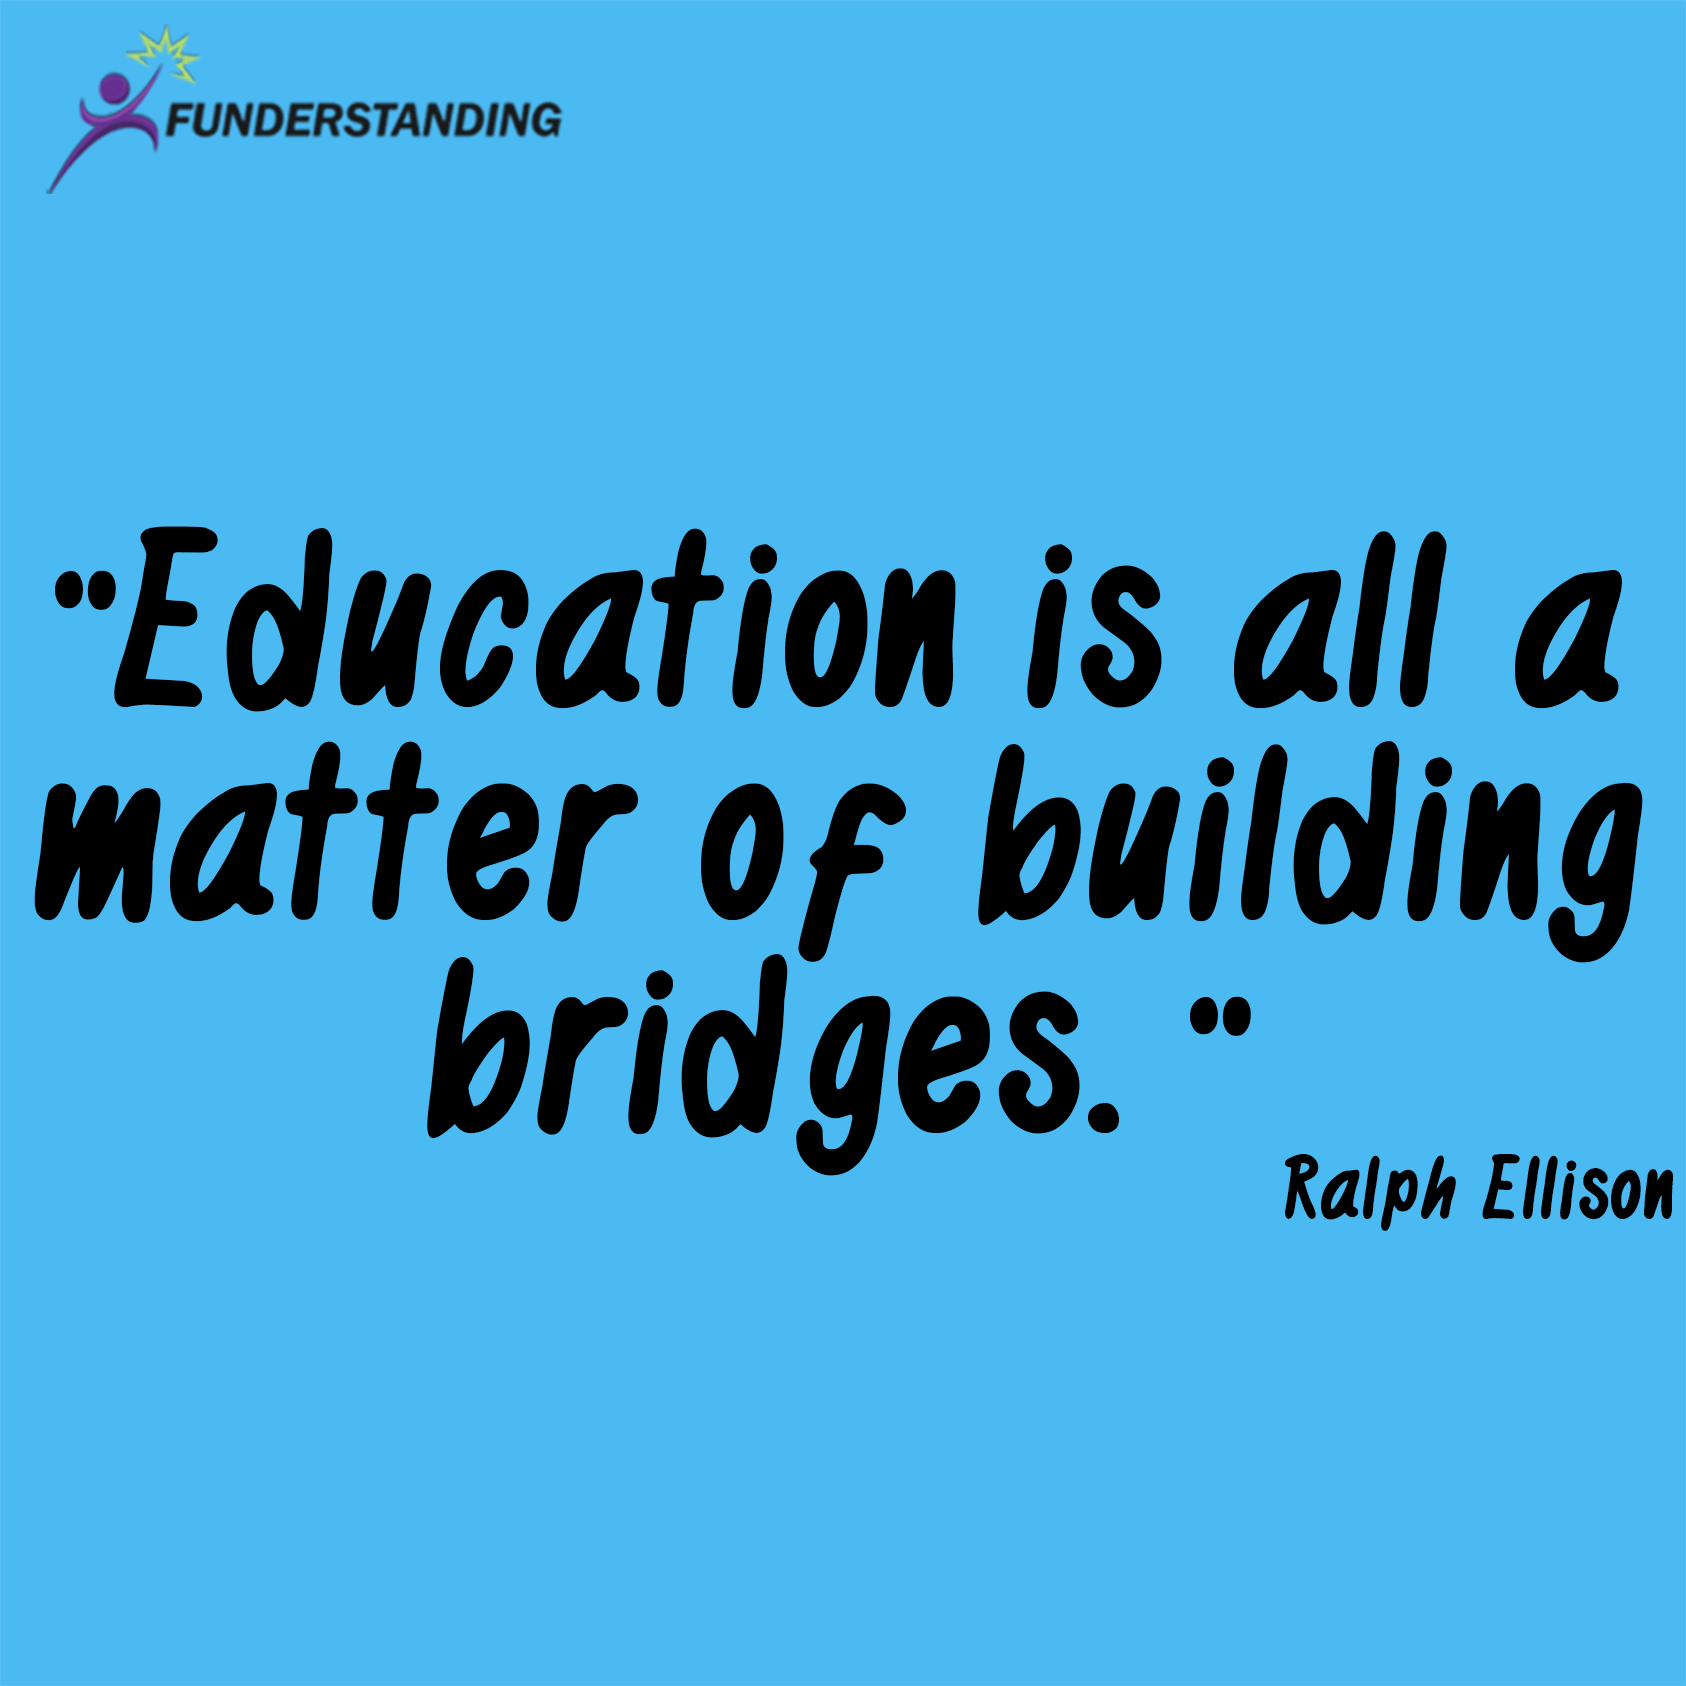 Education is all a matter of building bridges. Ralph Ellison